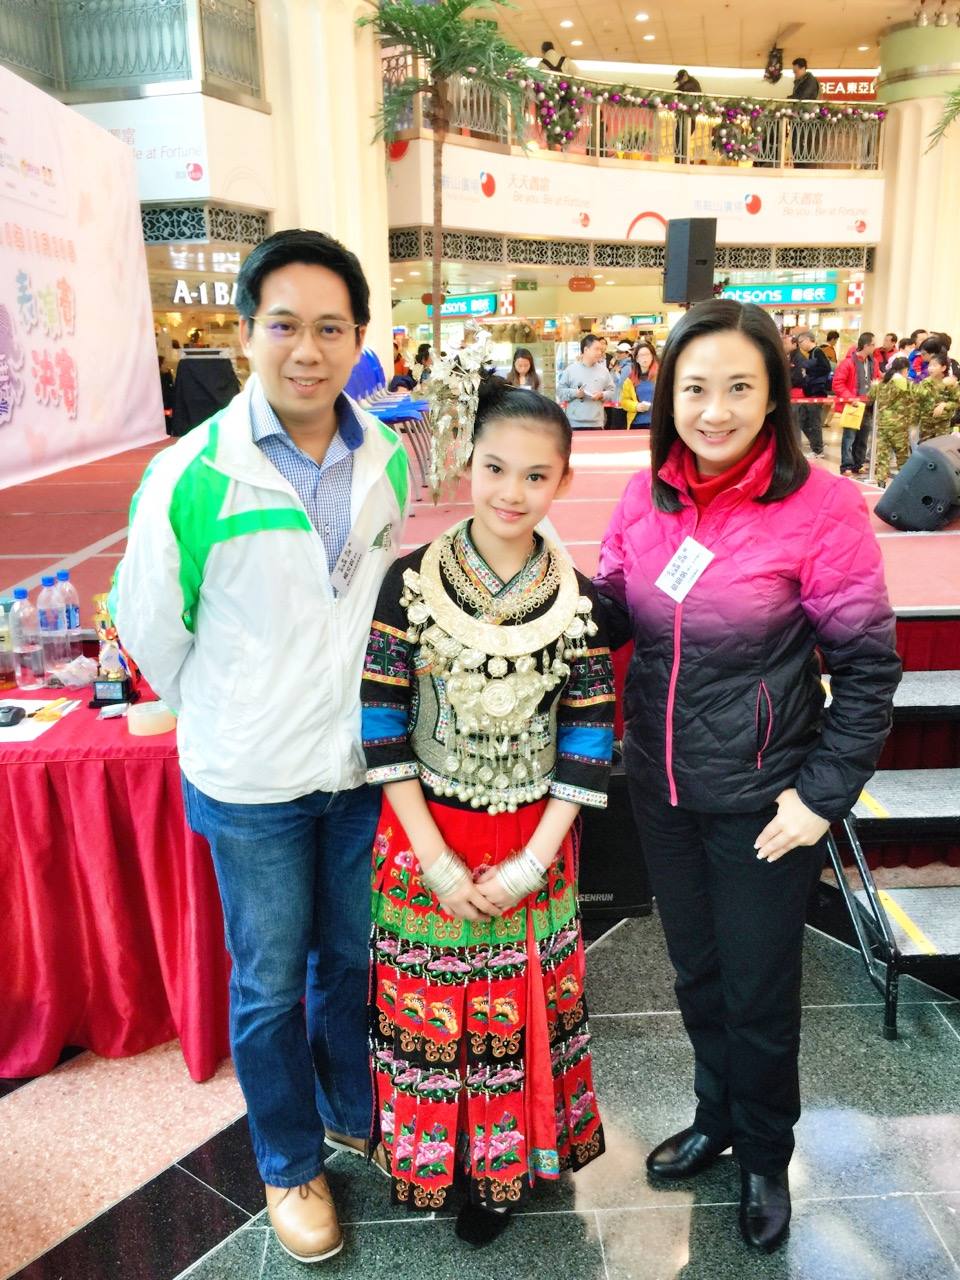 與楊文銳議員、表演苗族歌舞的葉響兒妹妹合照。